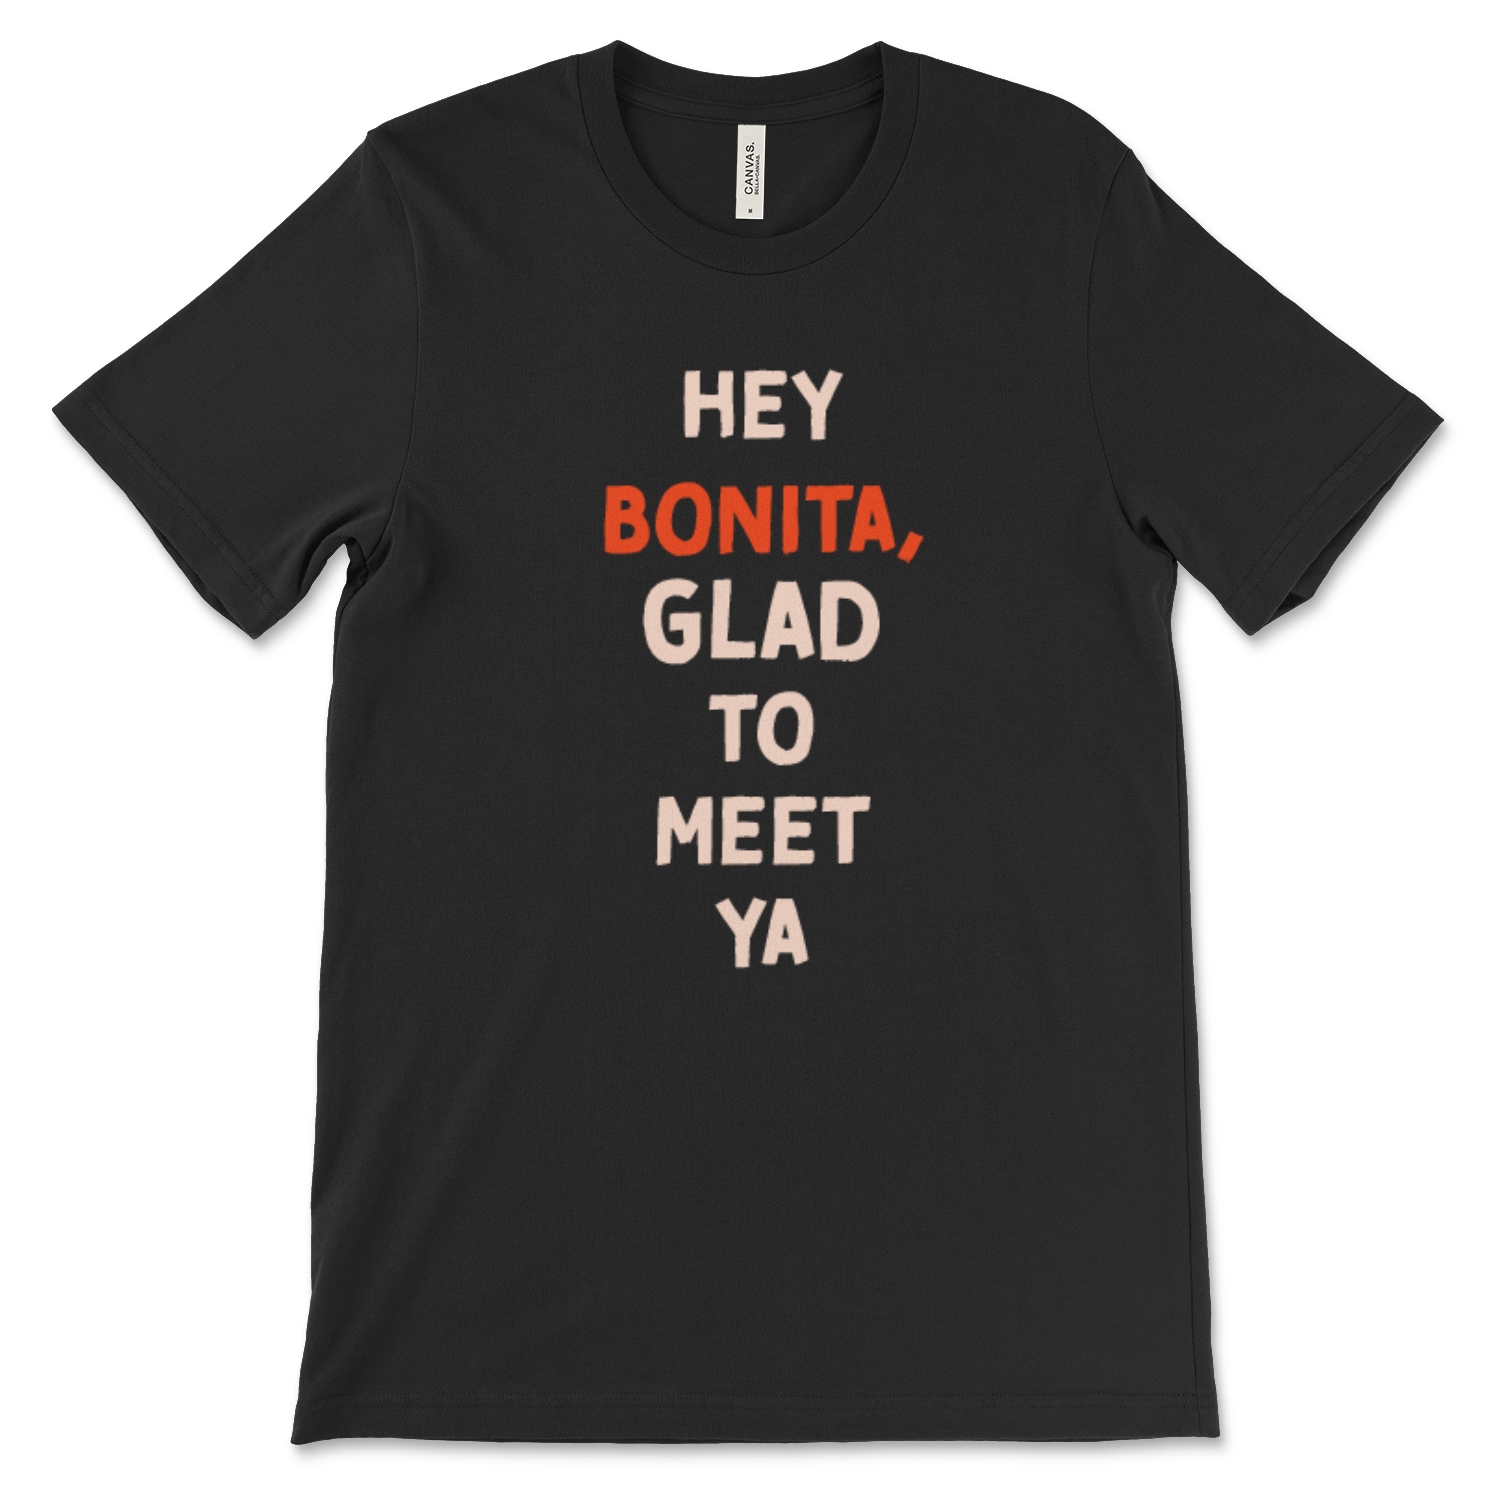 Hey! Bonita